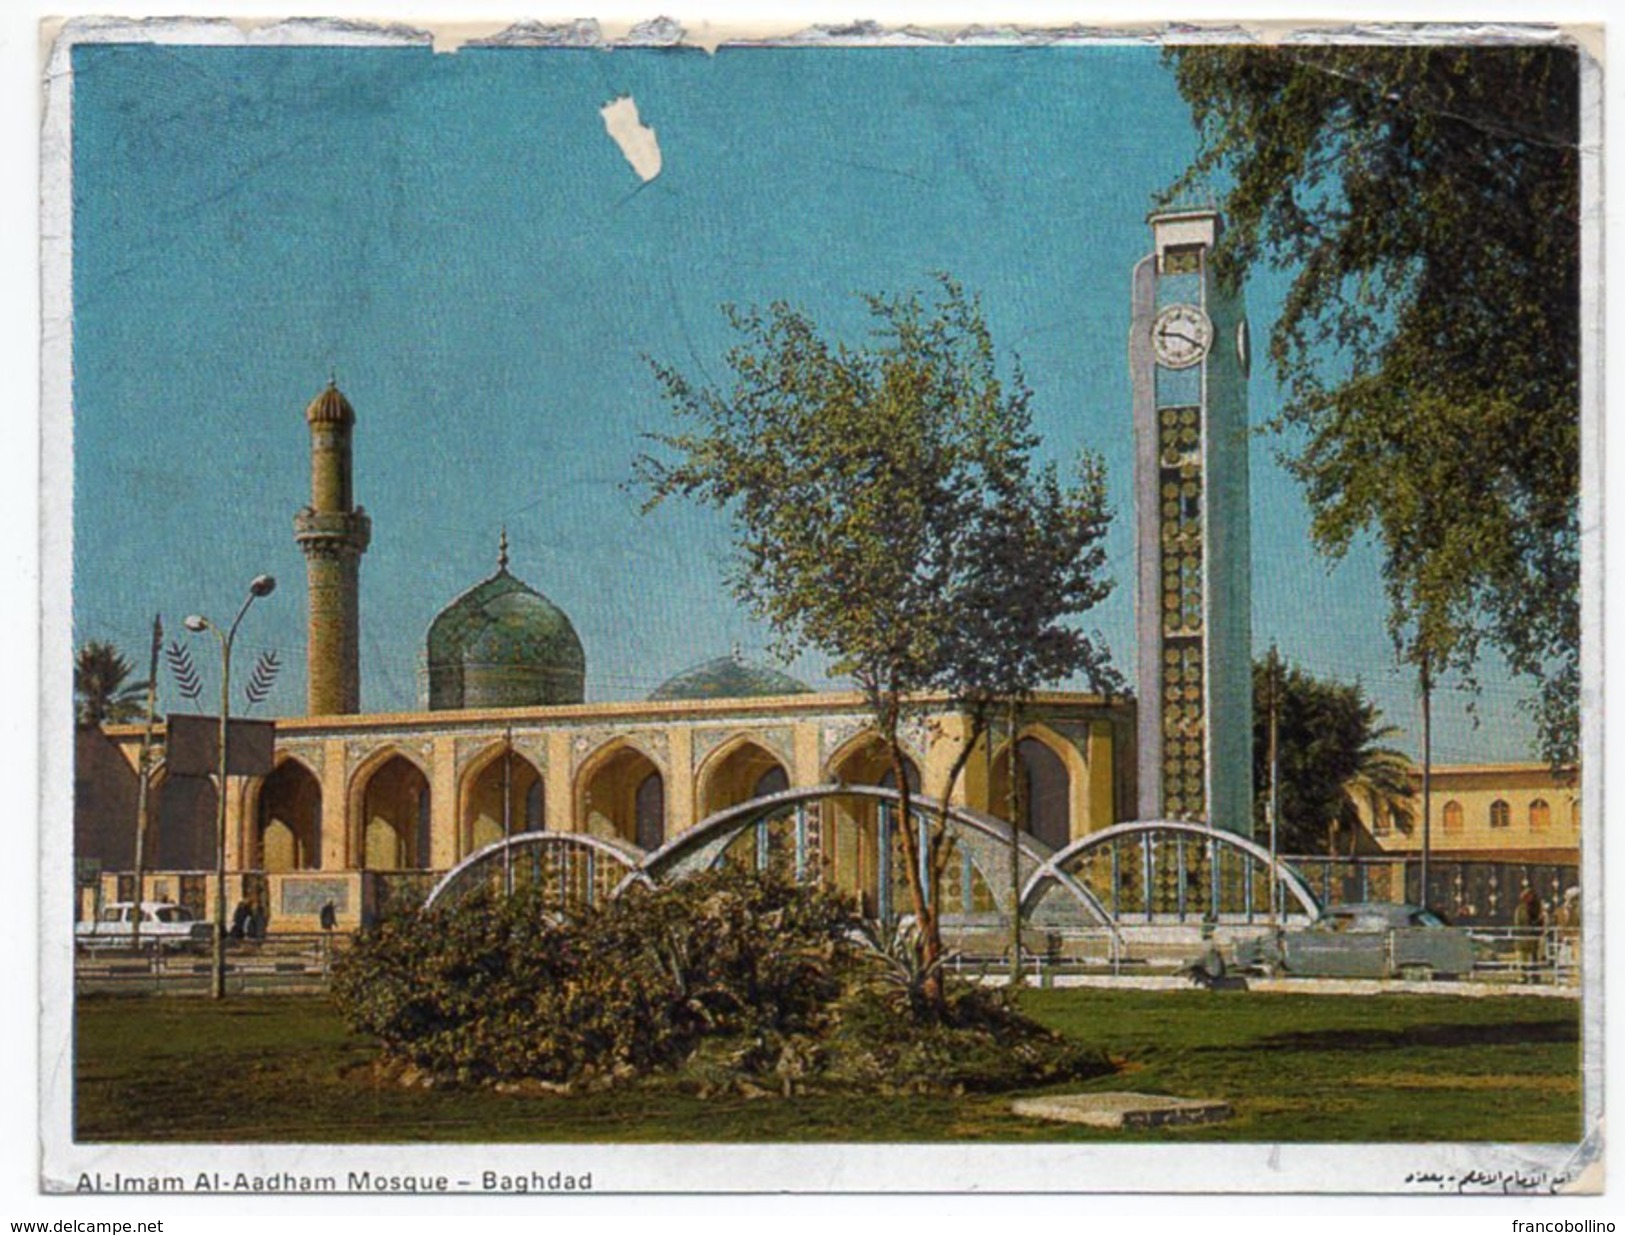 IRAQ/IRAK - AL-IMAM AL-AADHAM MOSQUE - BAGHDAD / CLOCK TOWER / Metallisèe - Irak